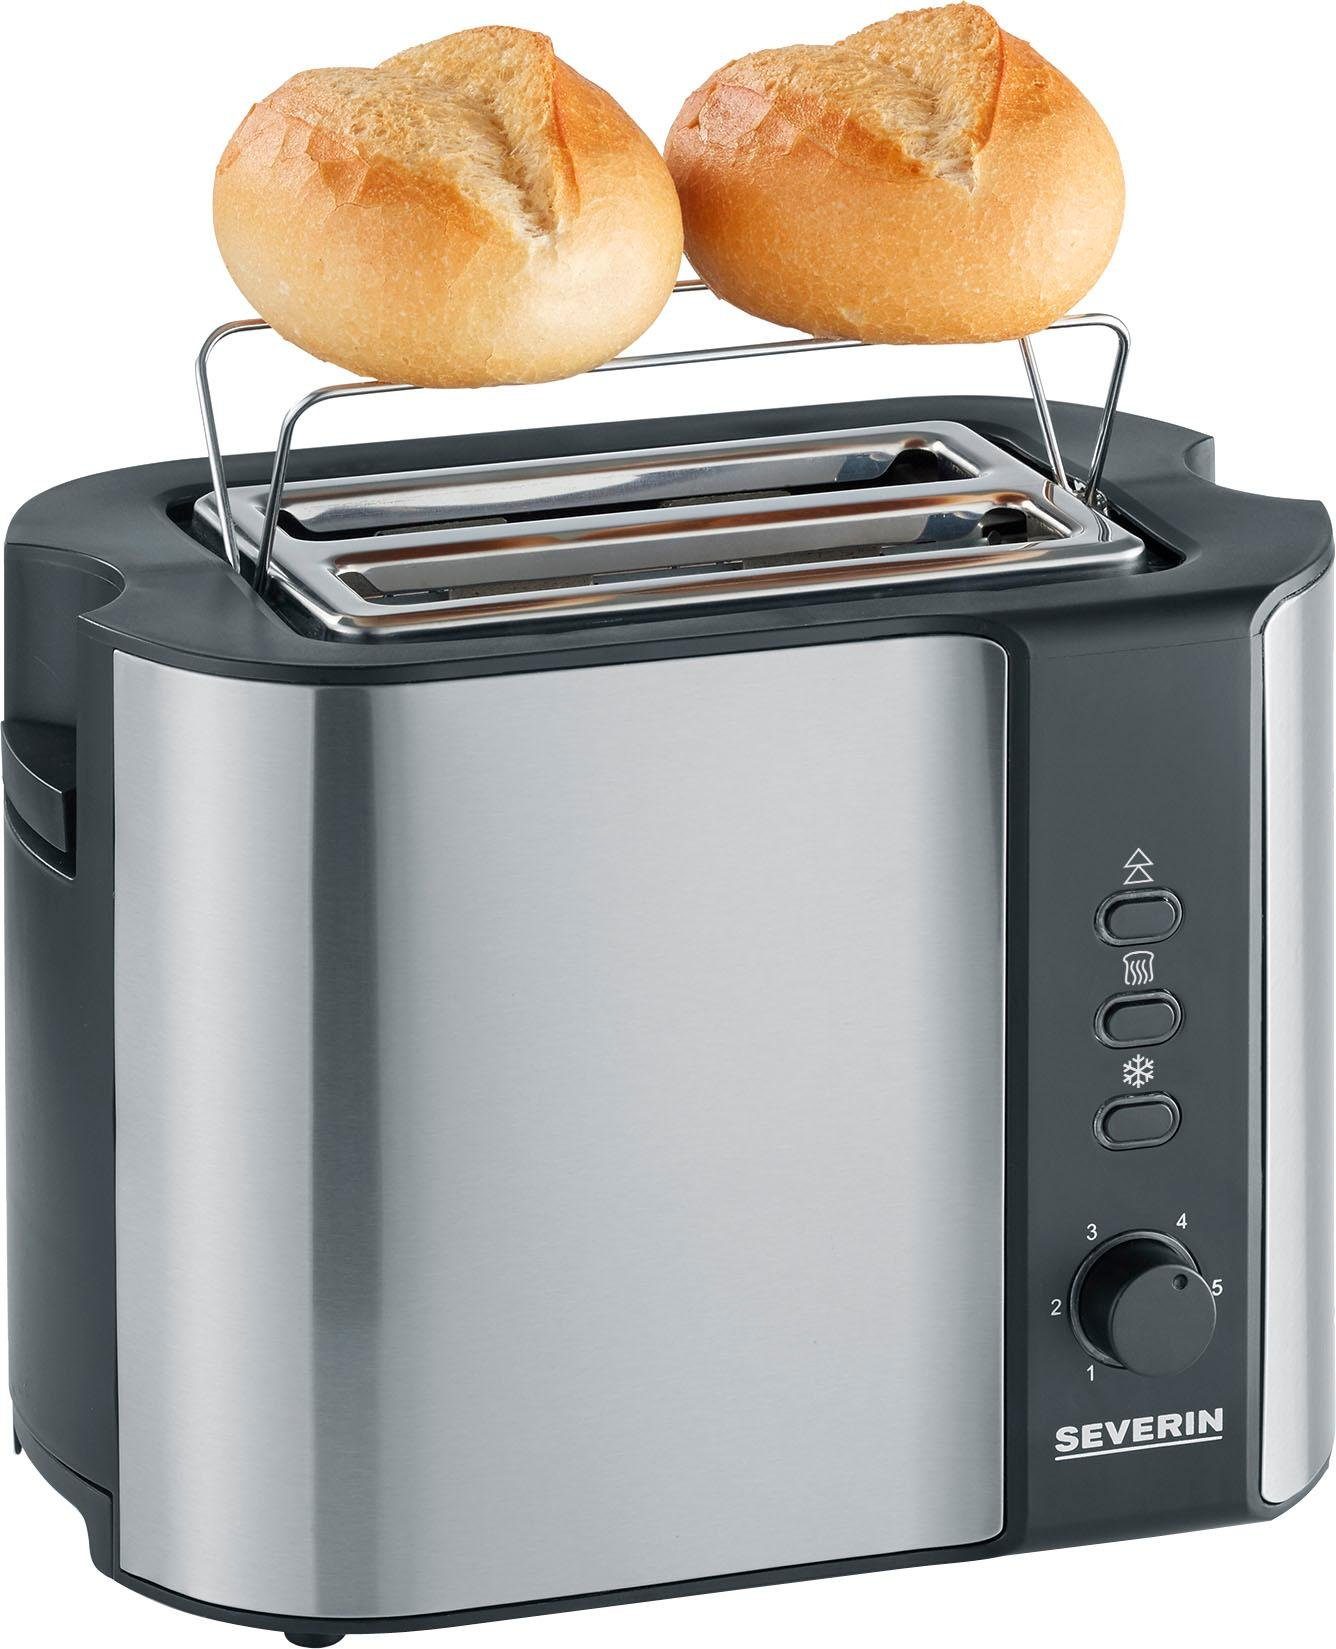 Severin Severin toaster AT 2589, voor 2 plakken brood, 800 Watt